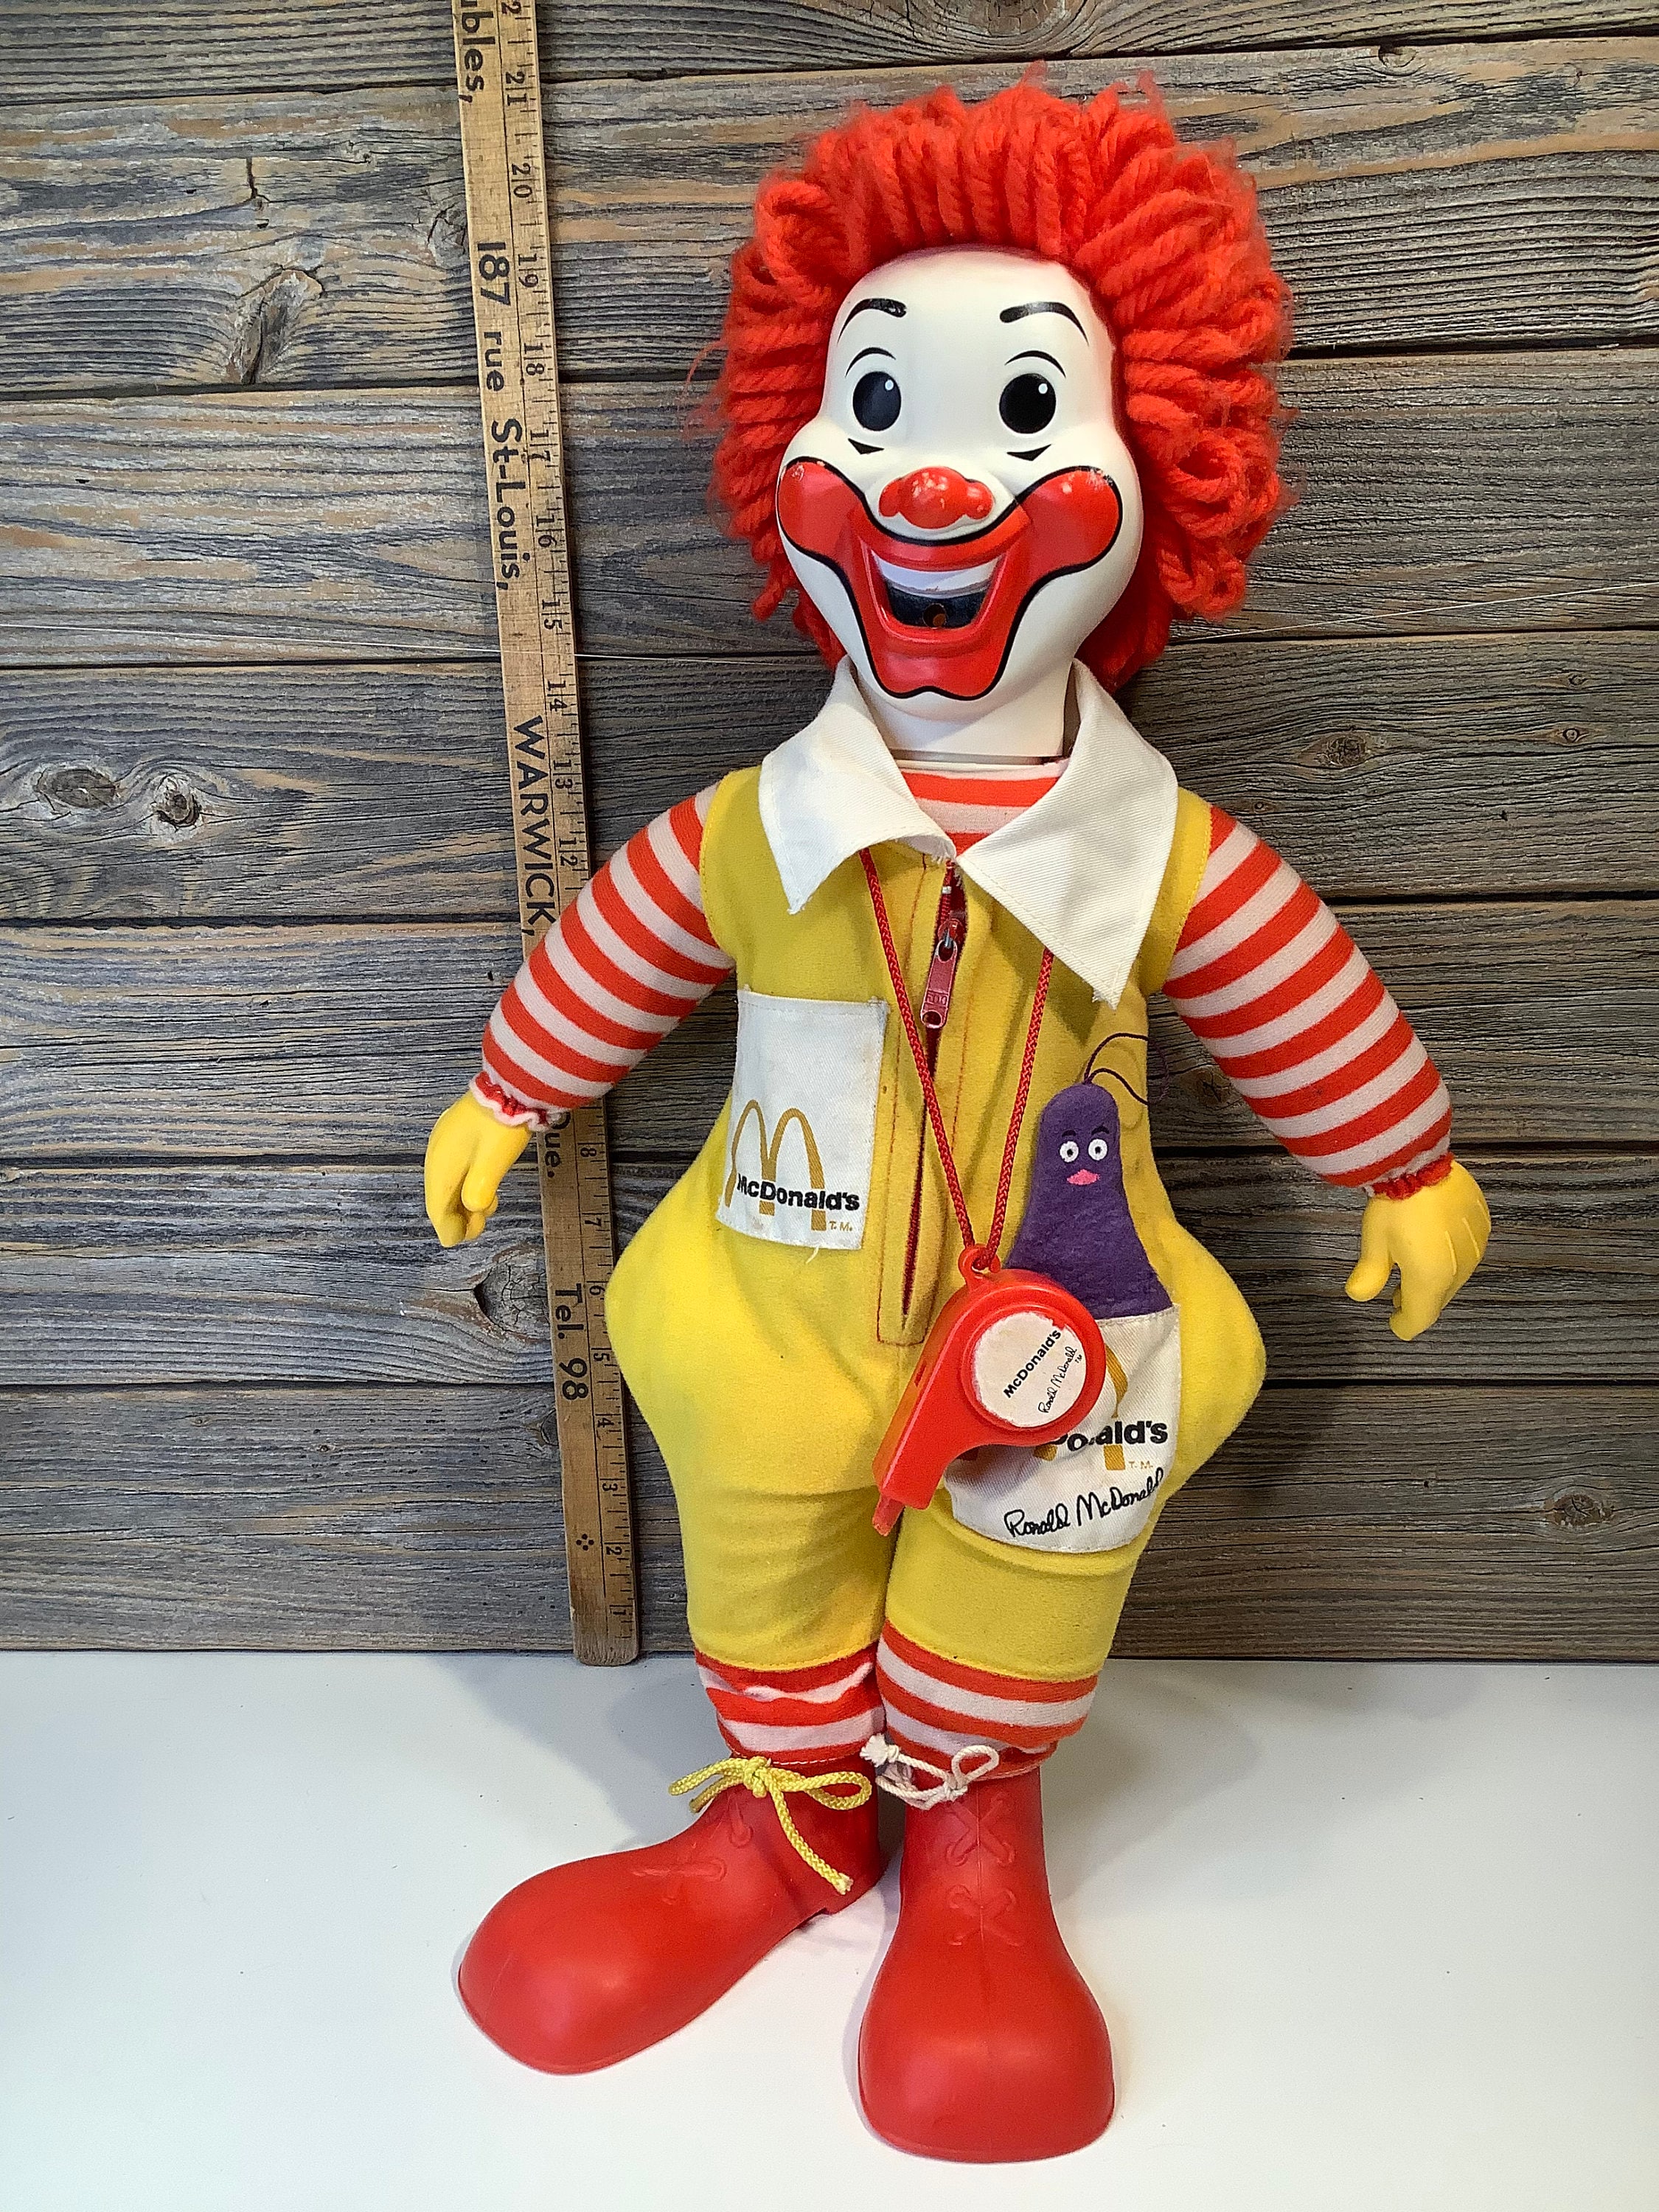 Ronald is Creepy - Etsy